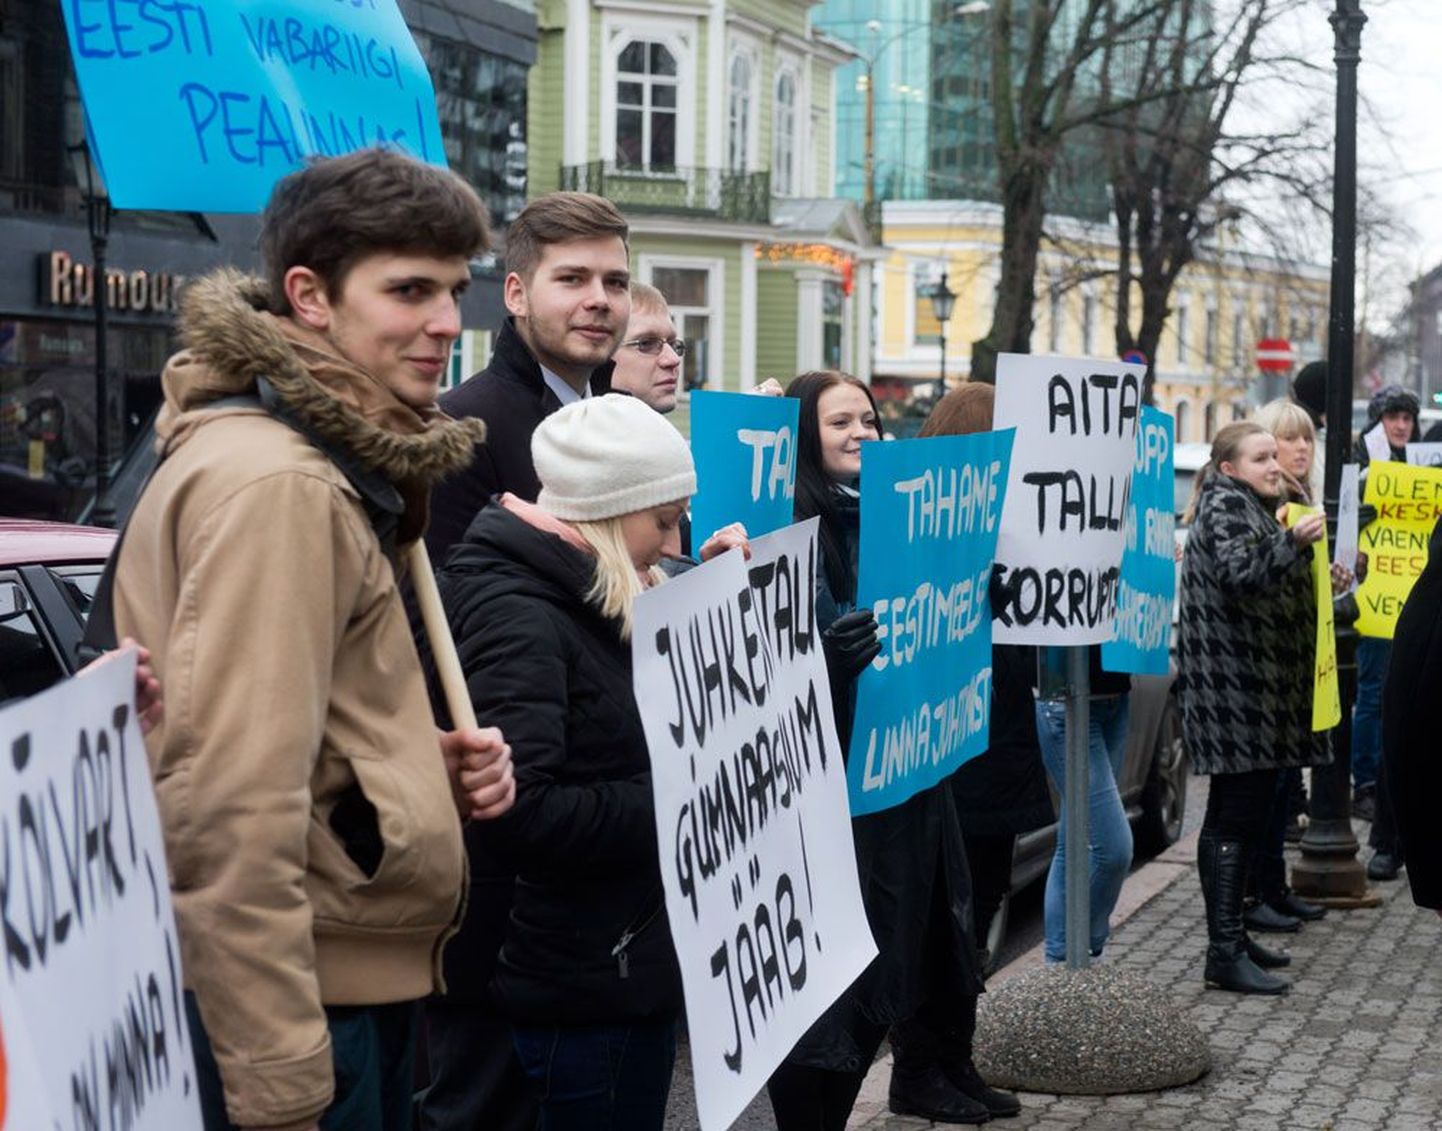 Tallinna opositsioonierakondade noored avaldasid eile linnavolikogu ees meelt haridusvaldkonda juhtiva abilinnapea Mihhail Kõlvarti vastu, kes nende hinnangul kasutab vene koolide eestikeelsele õppele ülemineku takistamiseks kahtlaseid ja korruptiivseid võtteid. Kõlvarti umbusaldusavaldus ei läinud volikogu istungil aga läbi – abilinnapea umbusaldamist toetas 25 ja selle vastu oli 42 linnavolinikku.